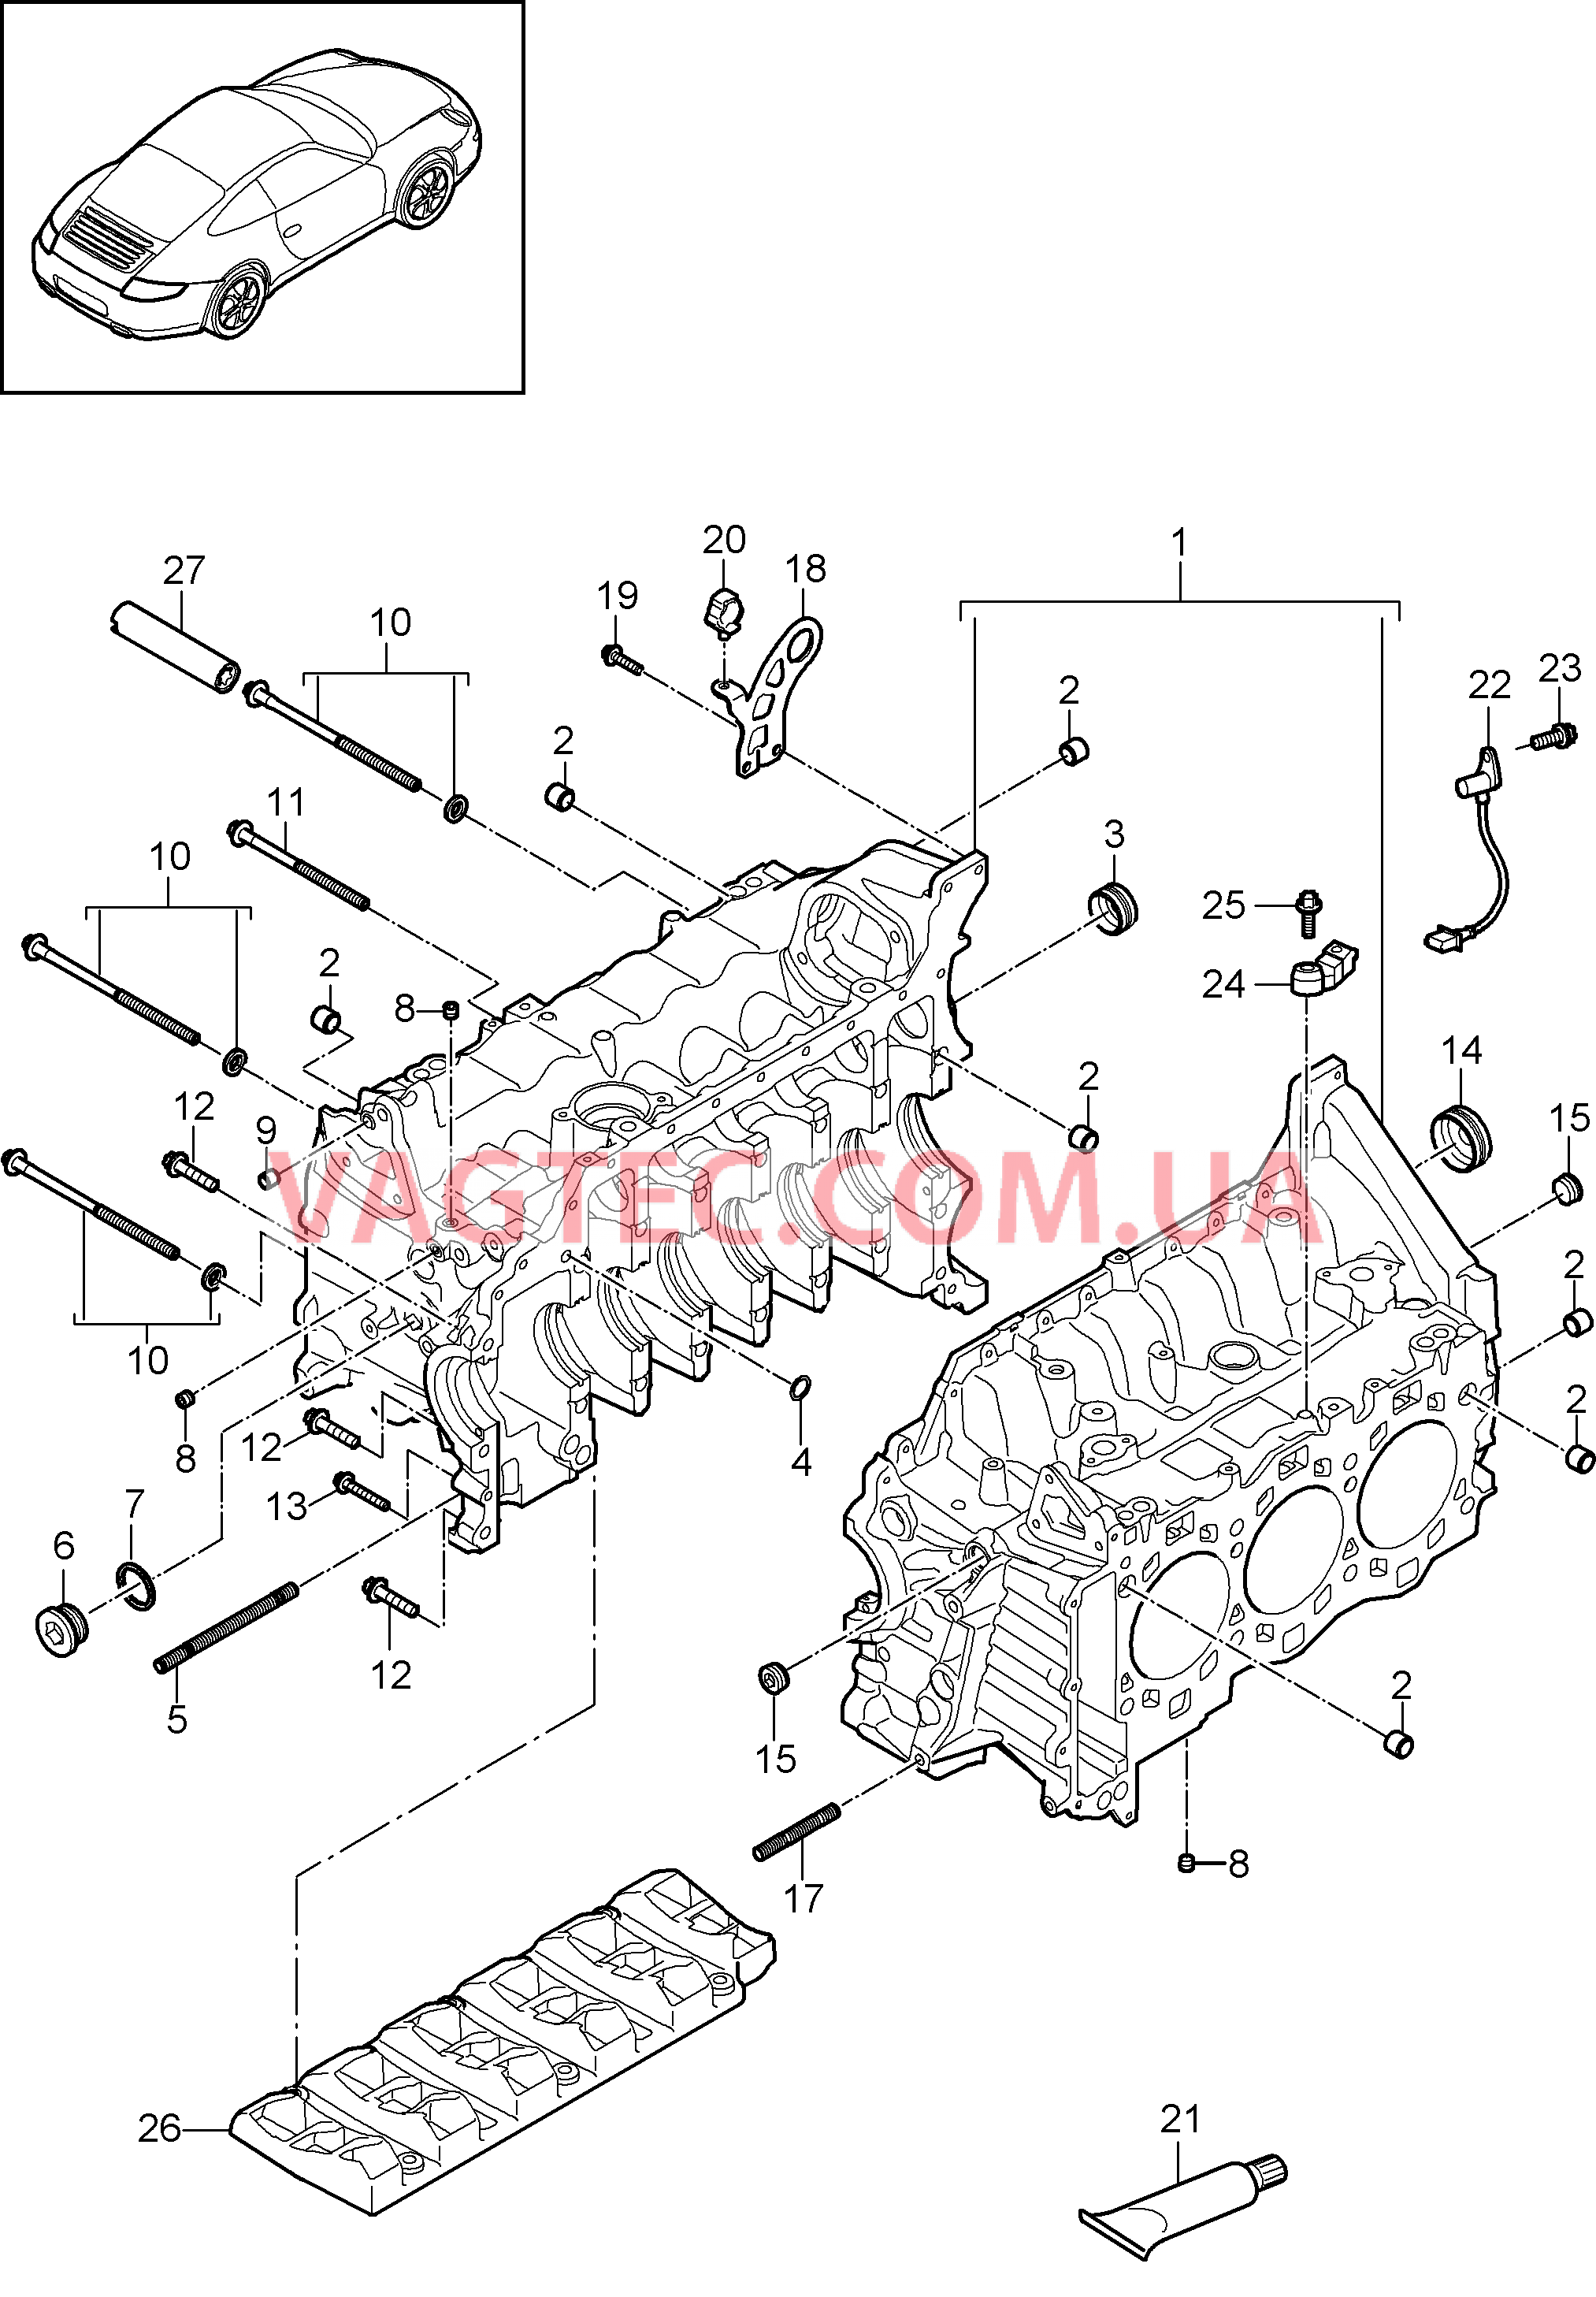 101-005 Кривошипный механизм
						
						MA1.01, MA1.02 для PORSCHE 911.Carrera 2009-2012USA